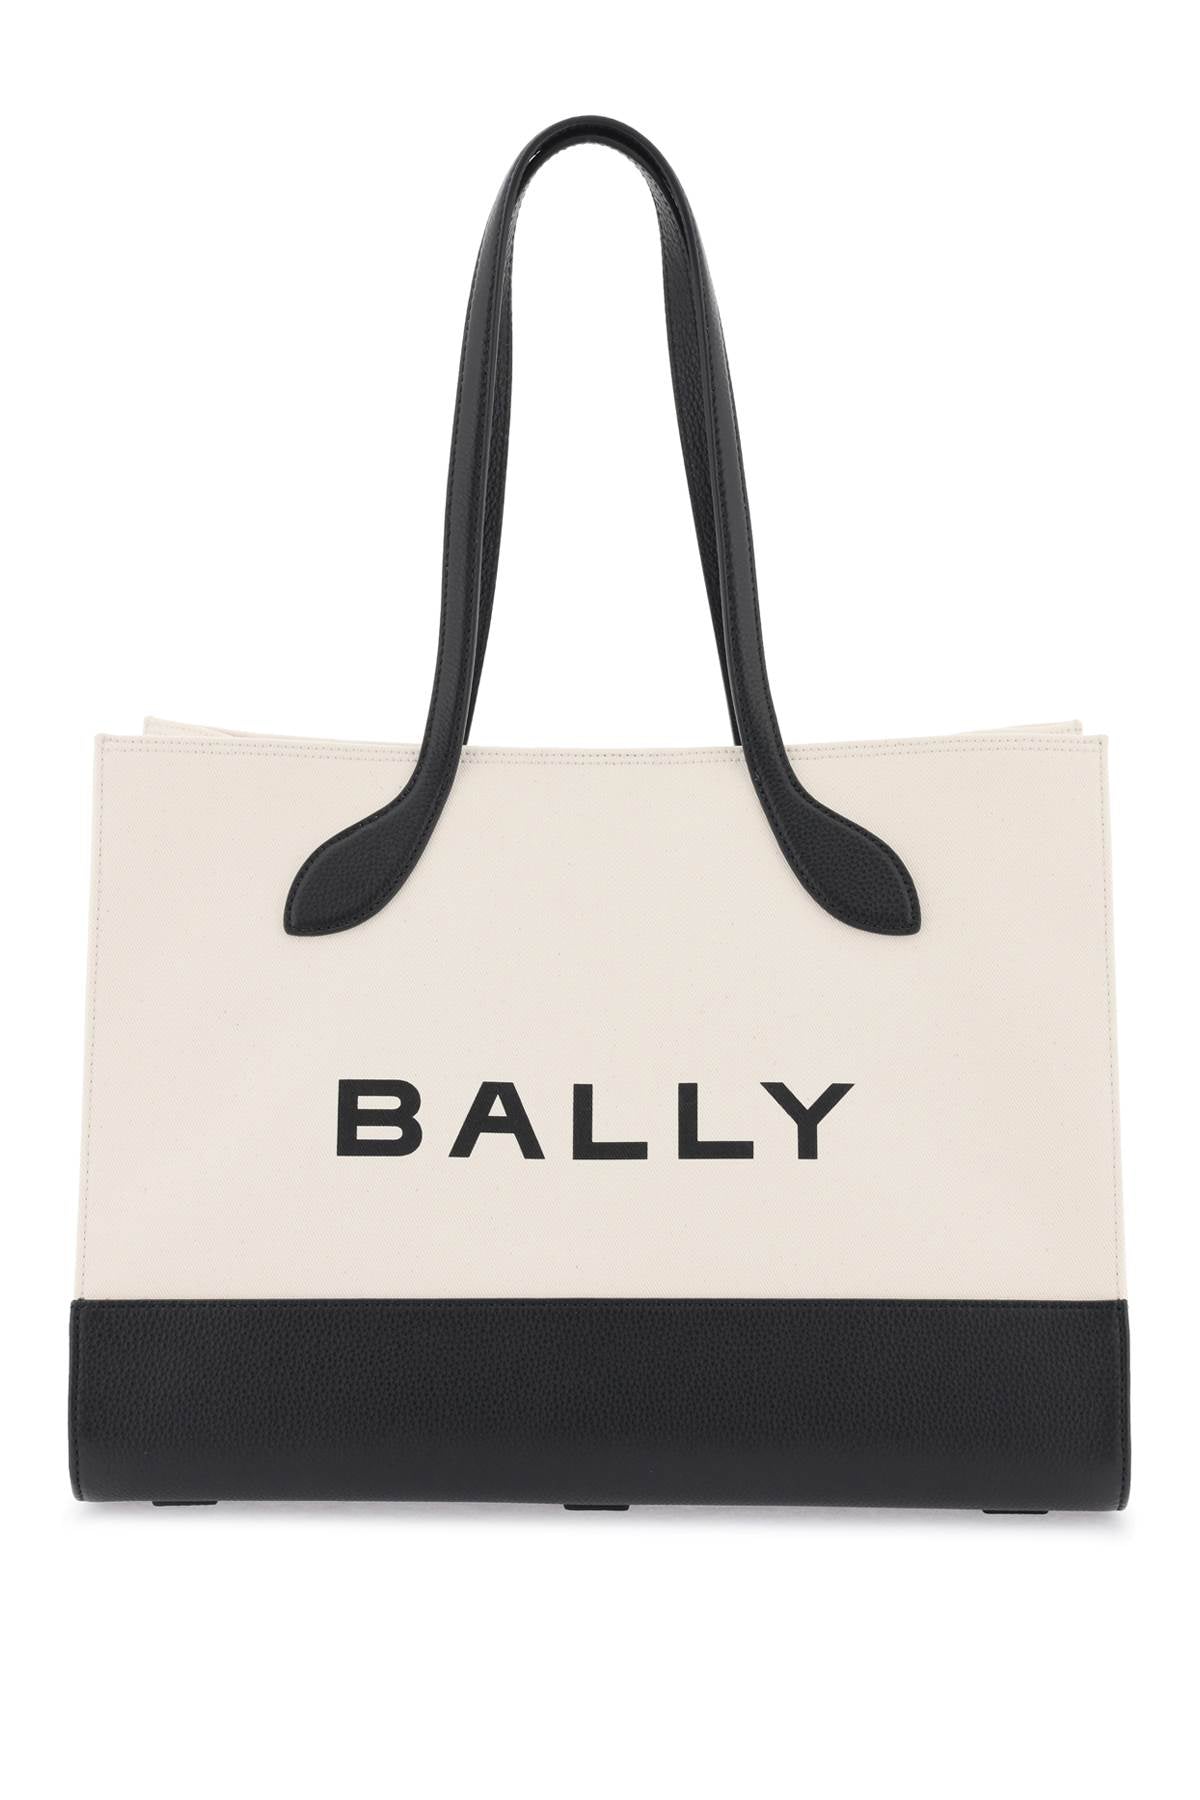 Bally 'keep on' tote bag WAE02X NATURAL BLACK ORO